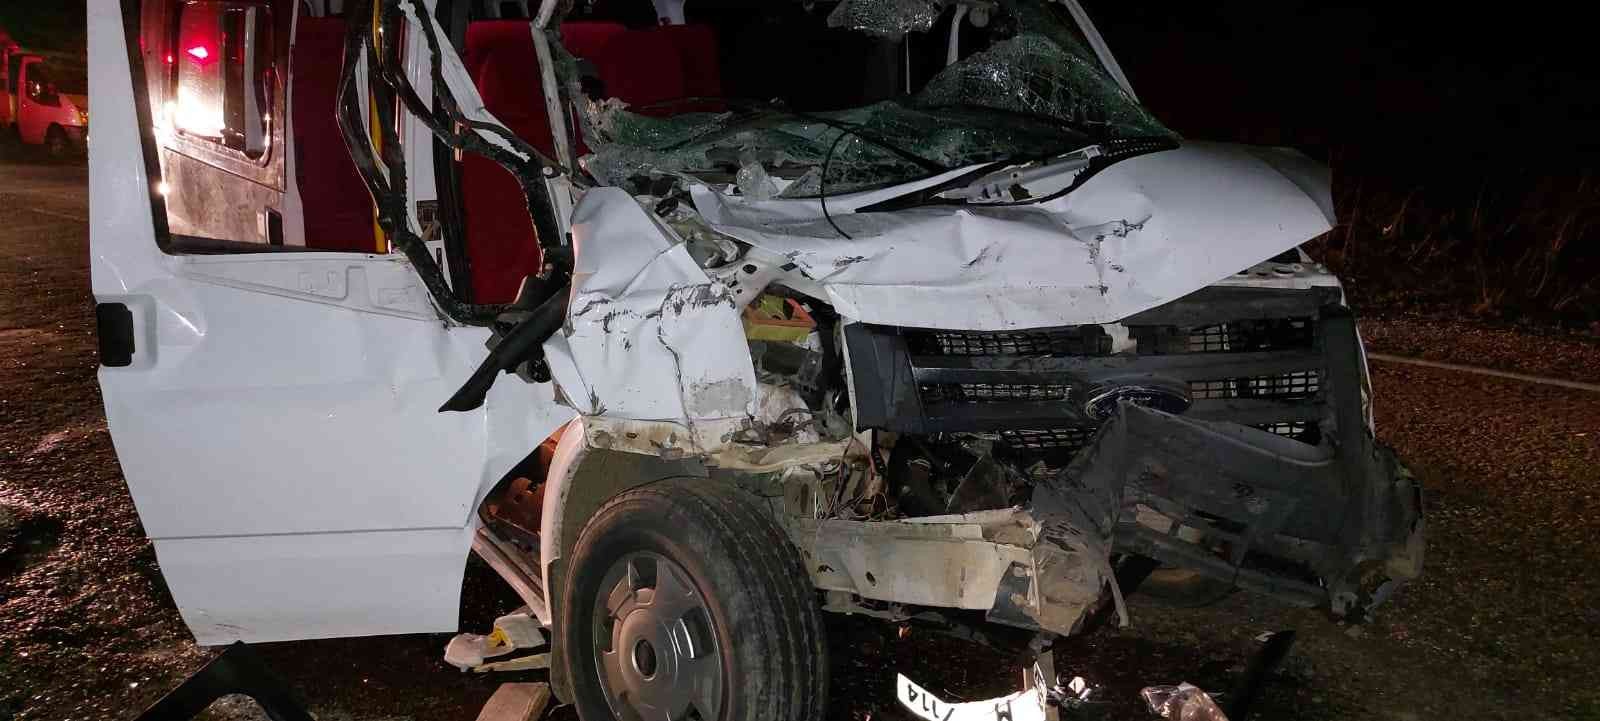 Giresun’da minibüs ile traktör çarpıştı: 3 yaralı #giresun